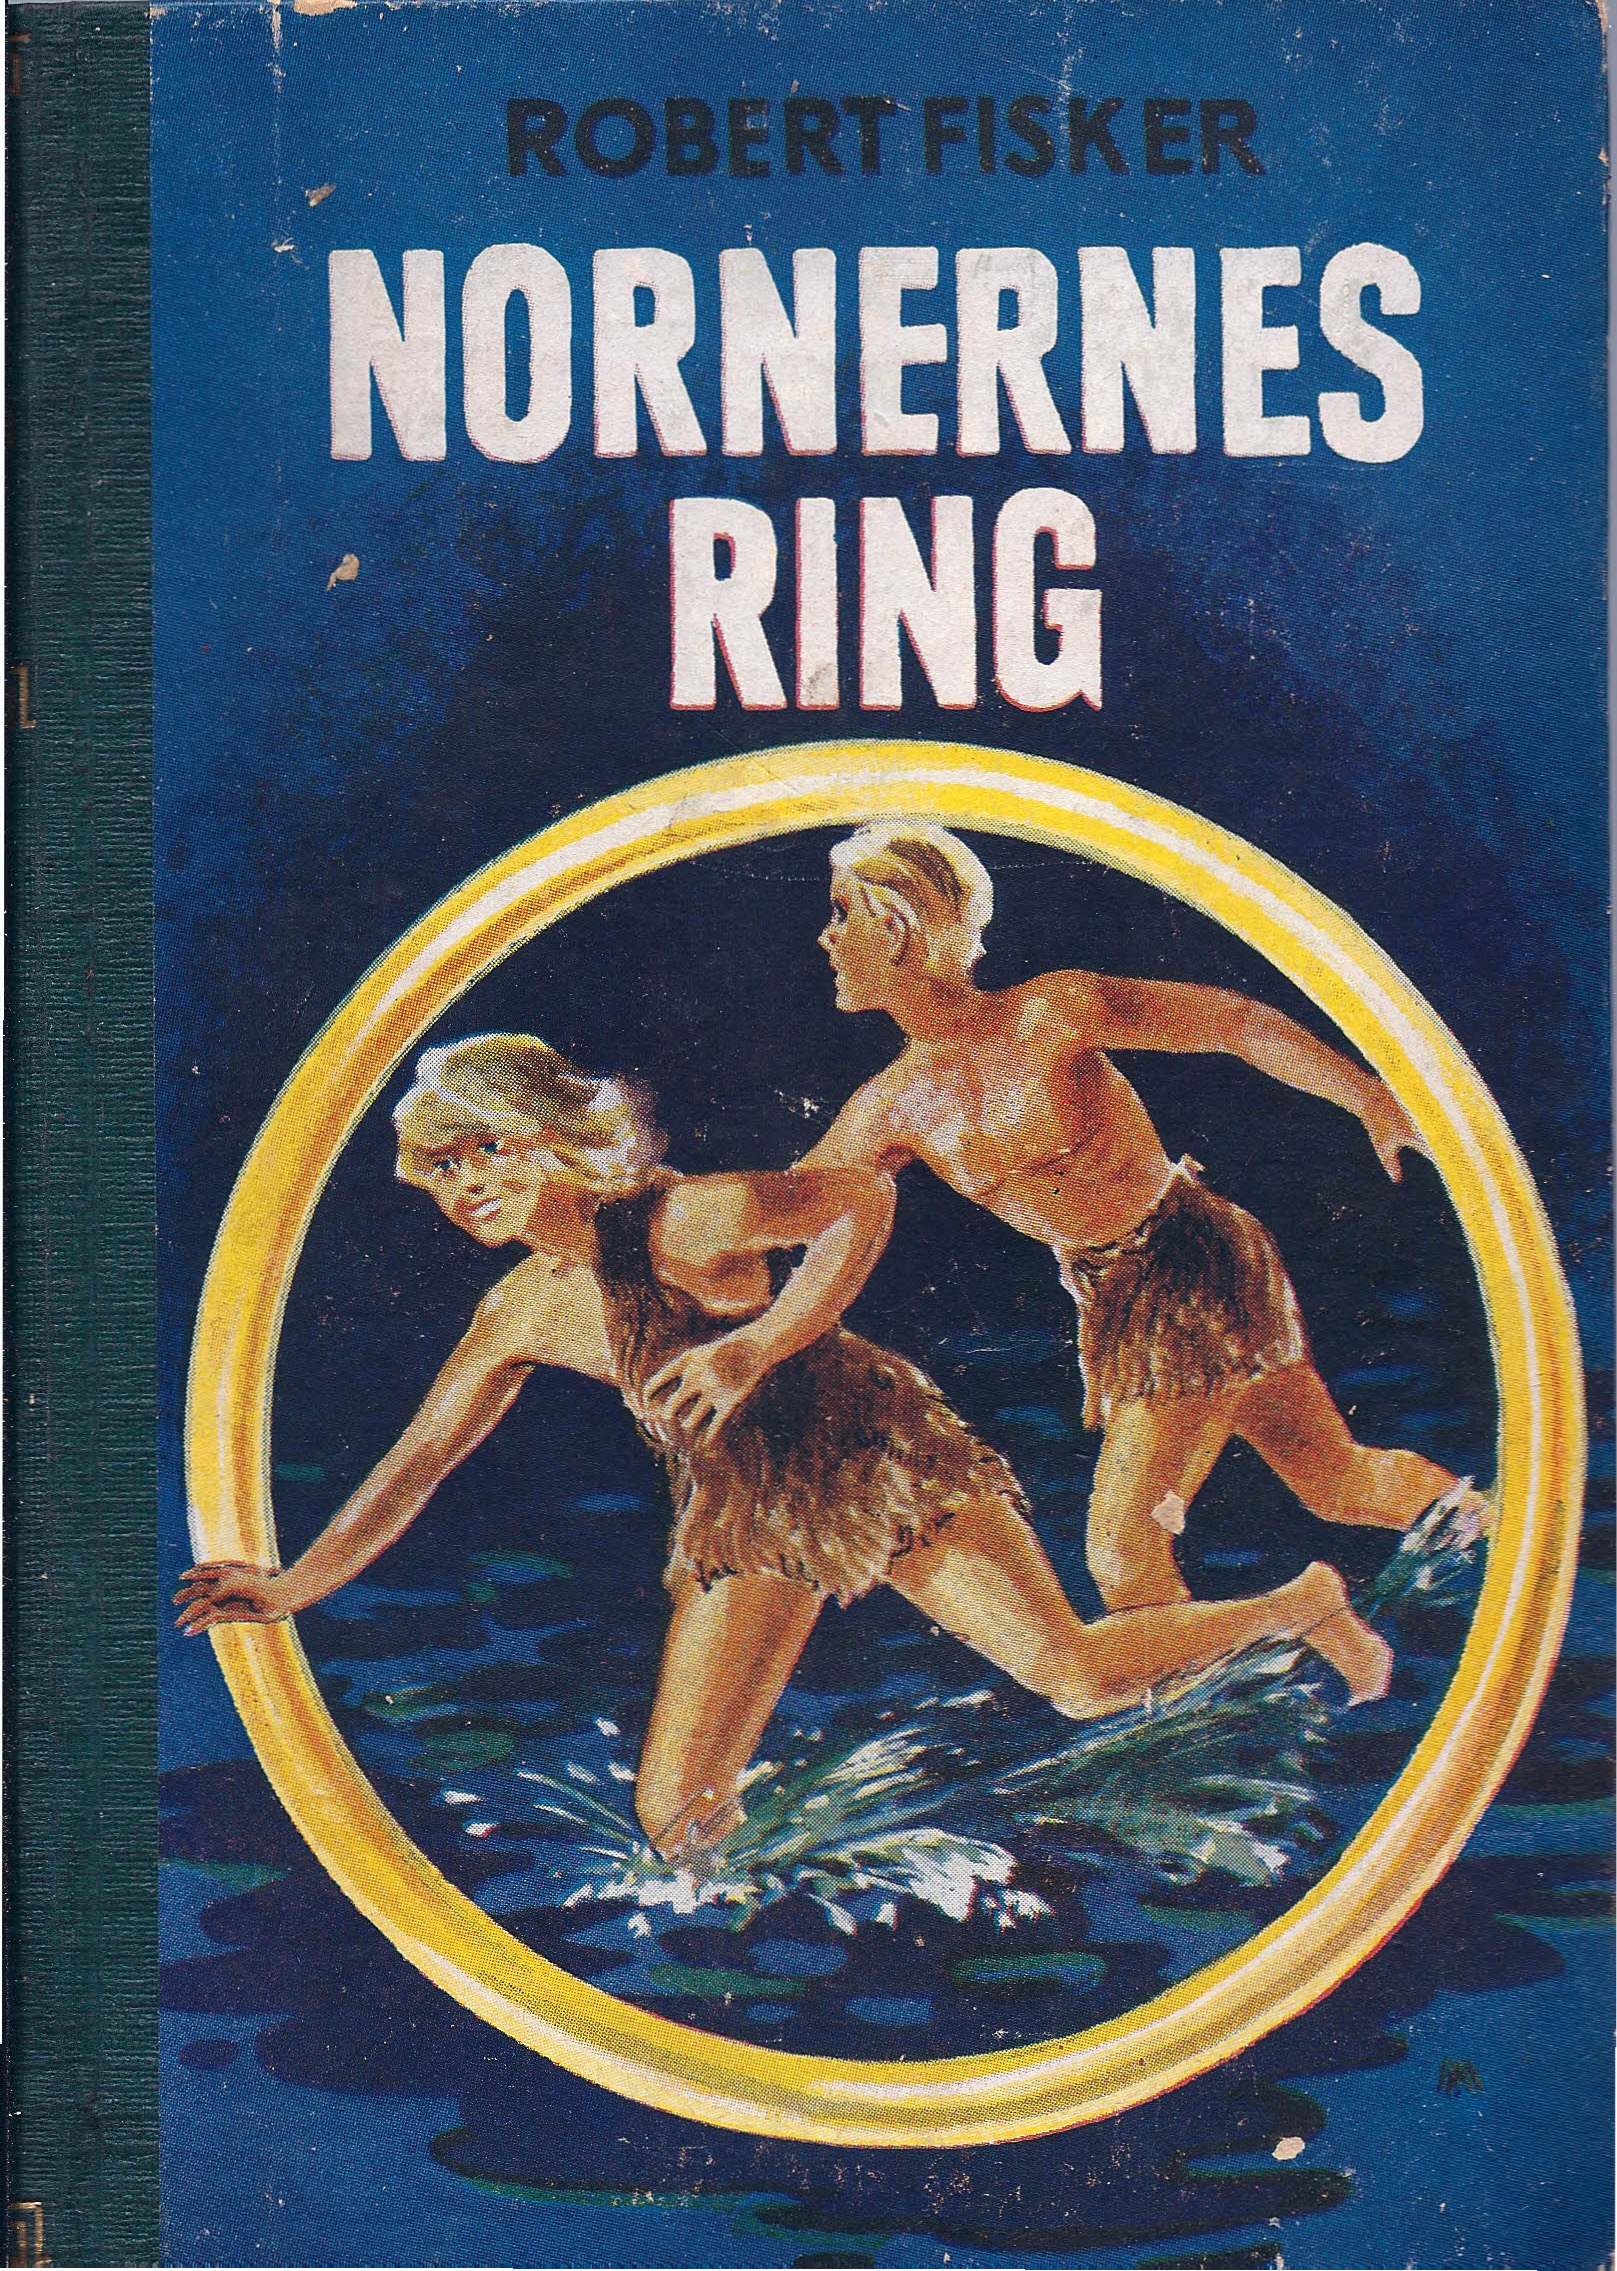 Nornernes Ring - Robert Fisker-1